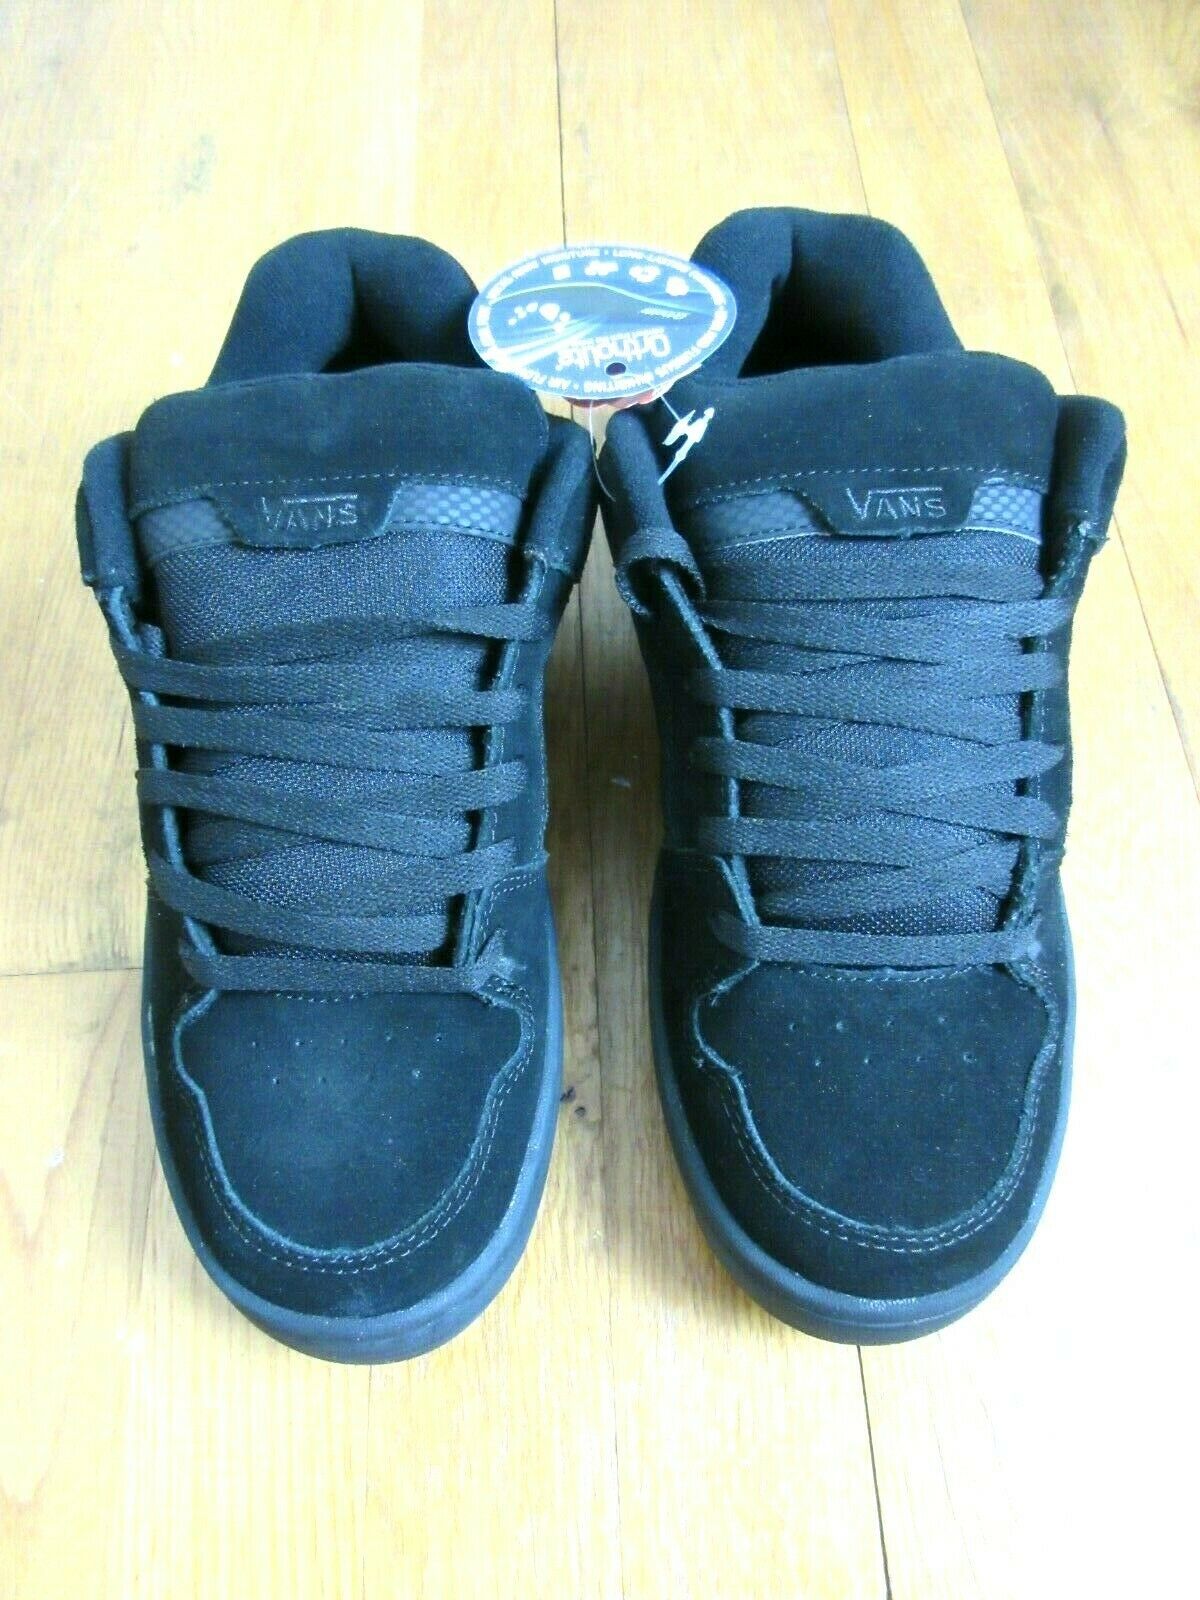 Vans Mens Docket Black Charcoal Grey Suede Skate shoes Size 8 Ortholite ...